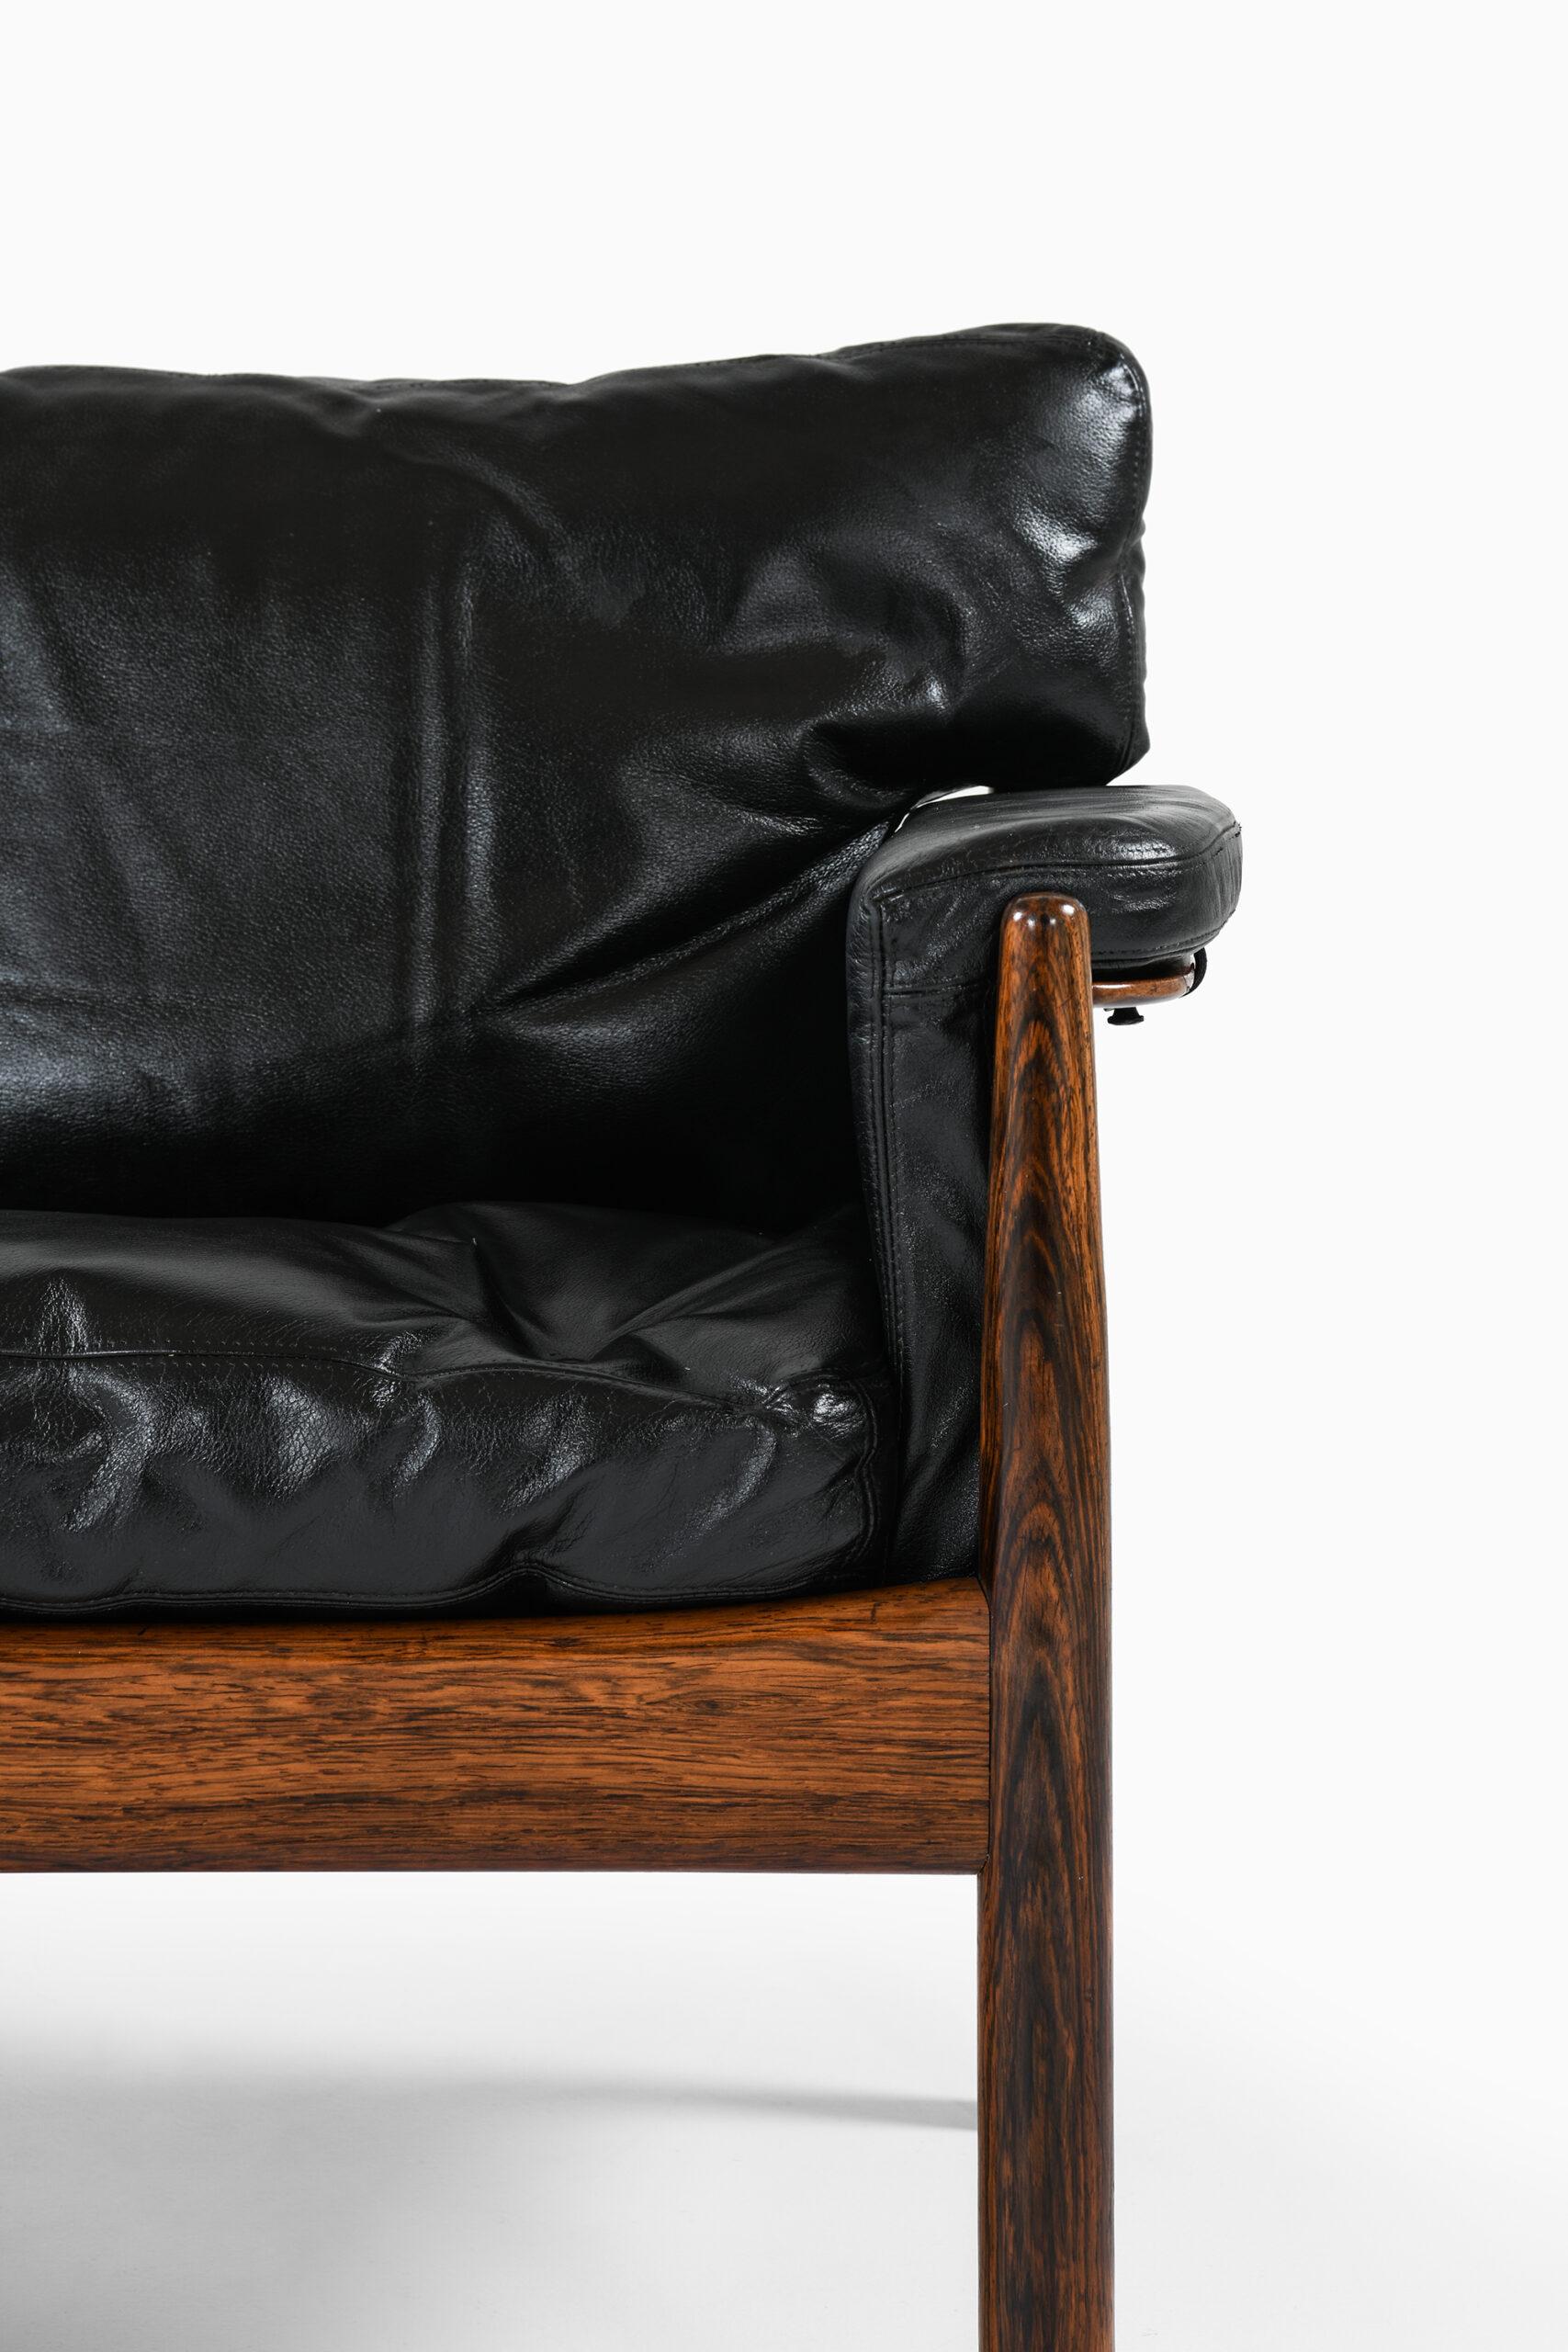 Sofa entworfen von Gunnar Myrstrand. Produziert von Källemo in Schweden.